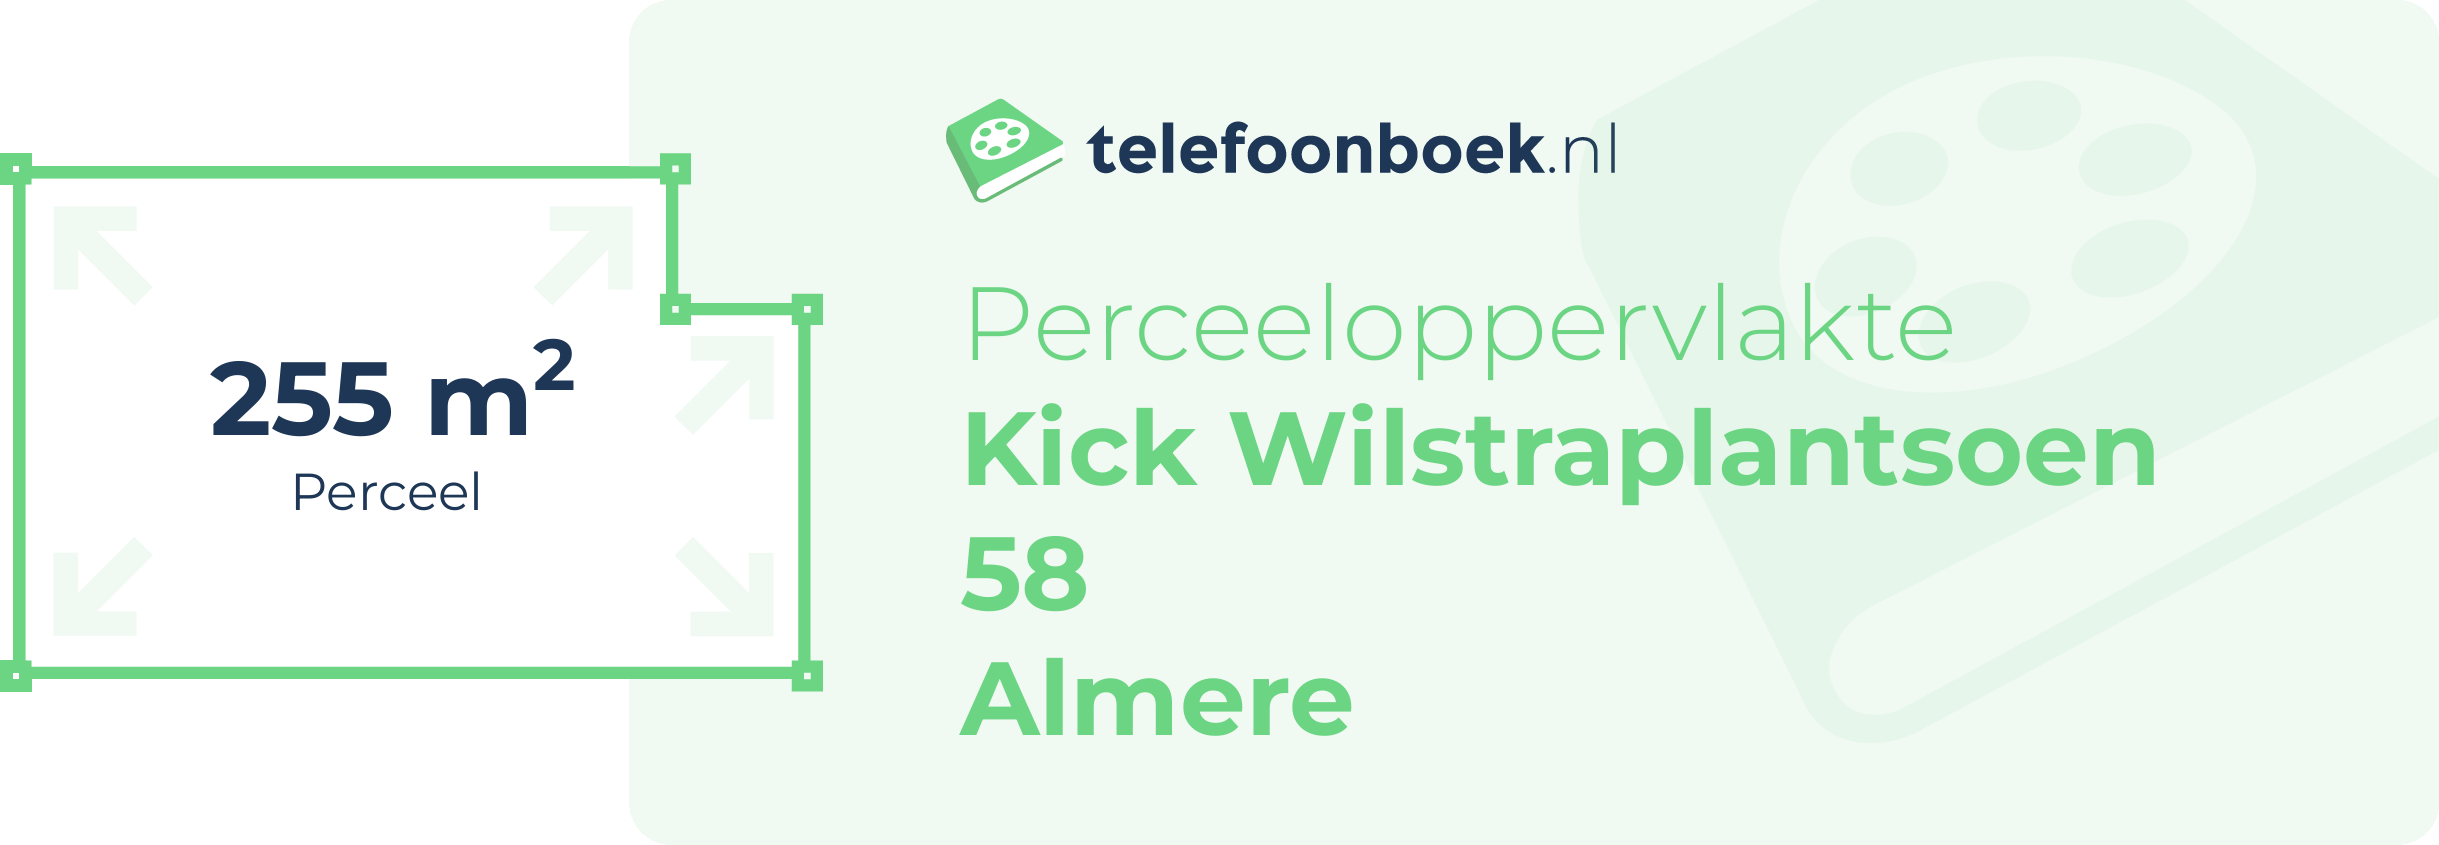 Perceeloppervlakte Kick Wilstraplantsoen 58 Almere